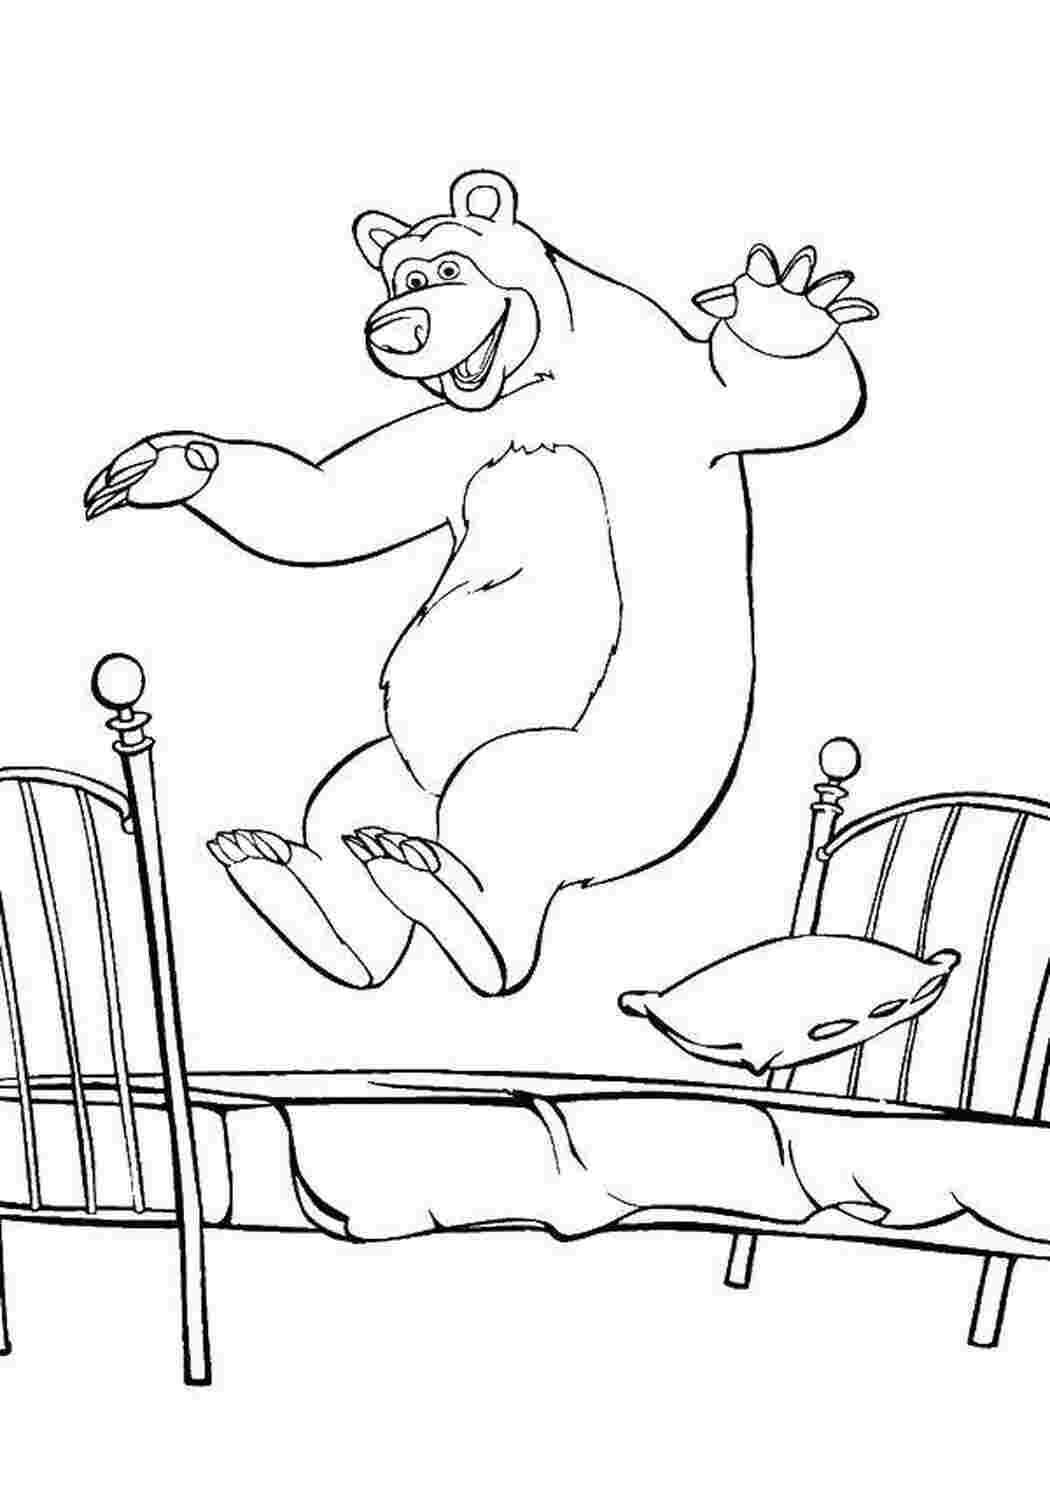 Раскраски Раскраски для детей про озорную Машу из мультфильма Маша и медведь  Миша прыгает на кровати